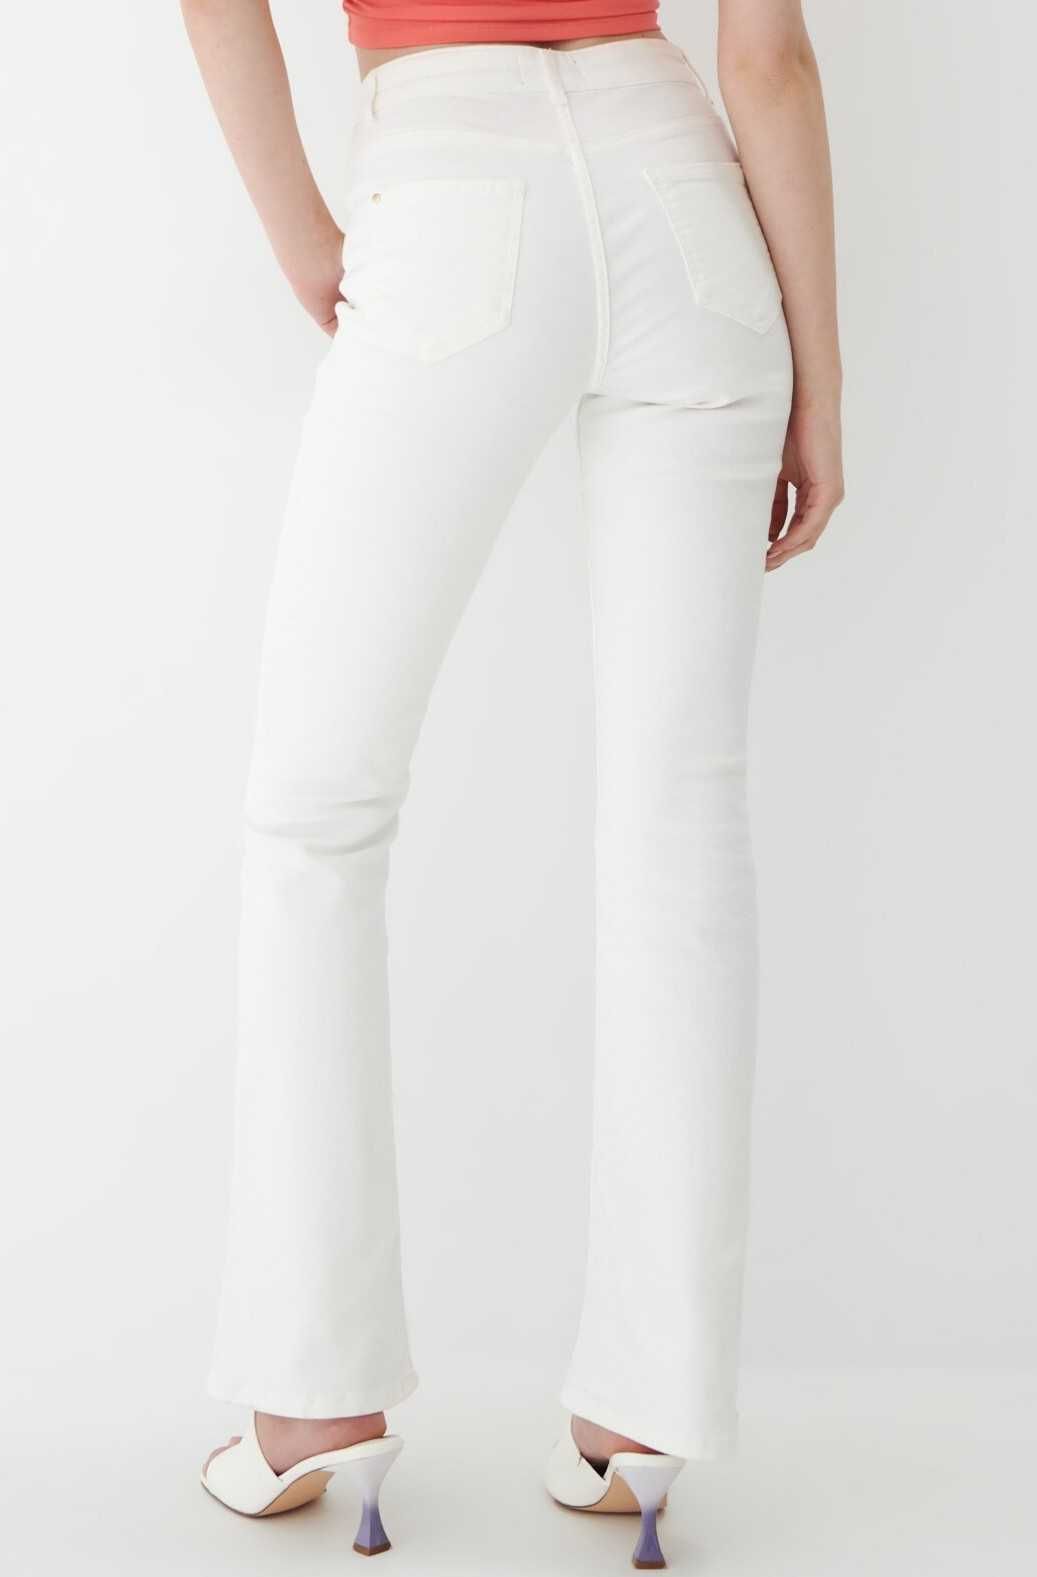 Spodnie białe Jeansy flare Mohito 42 XL / 40 L rozciągliwe